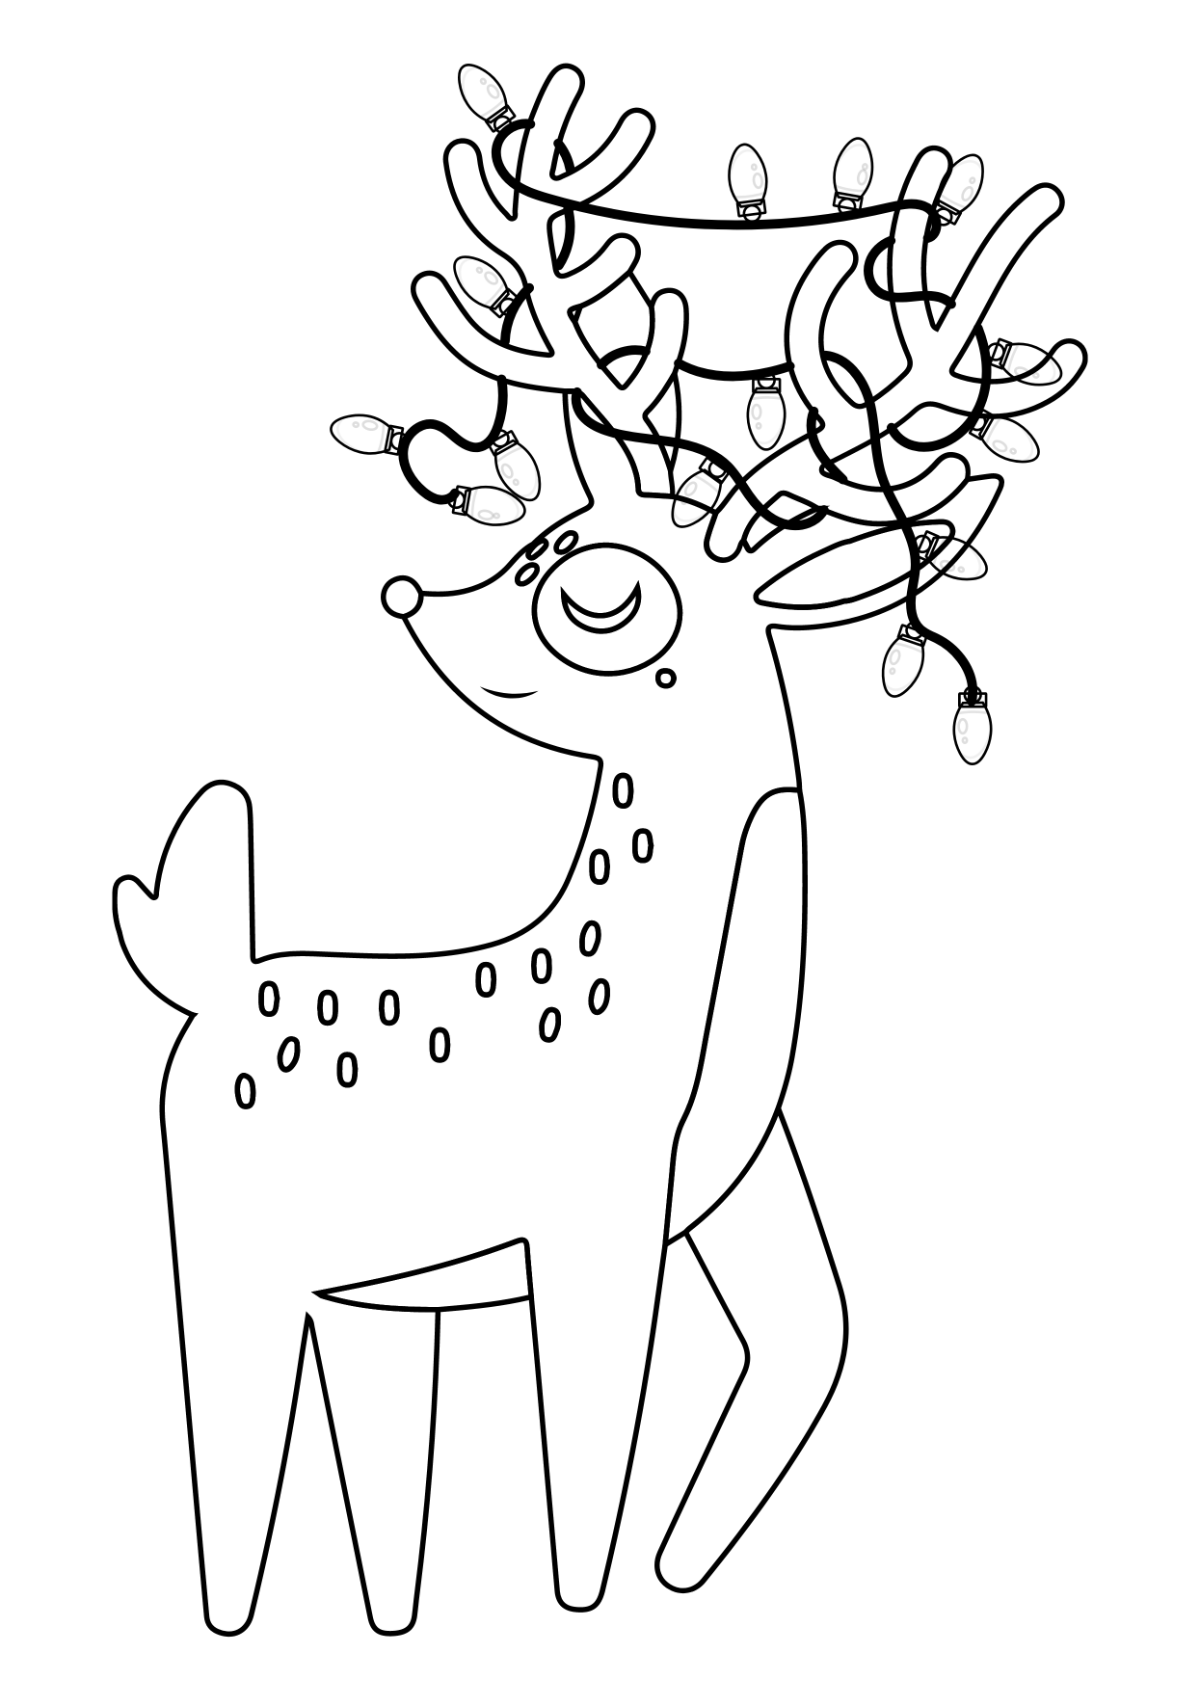 Free Christmas Reindeer Drawing Template